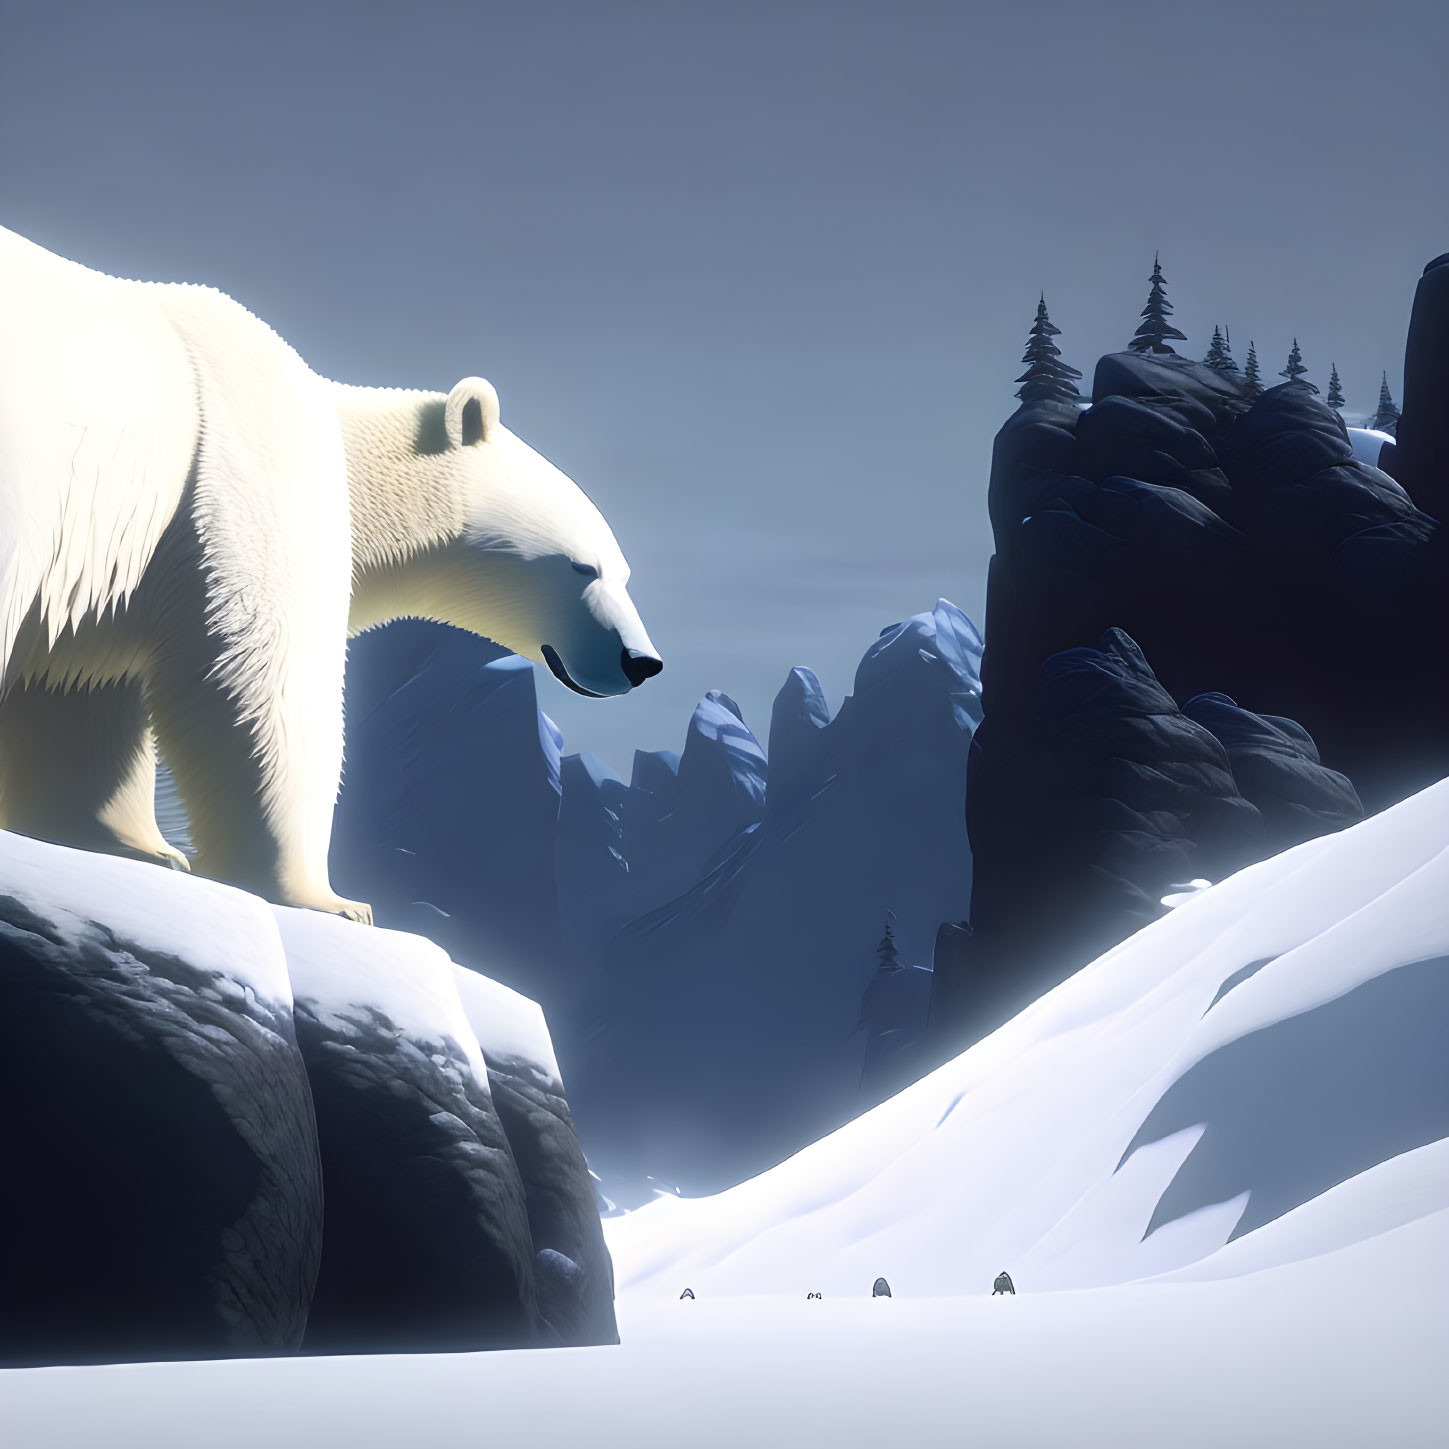 Polar bear in the mountains